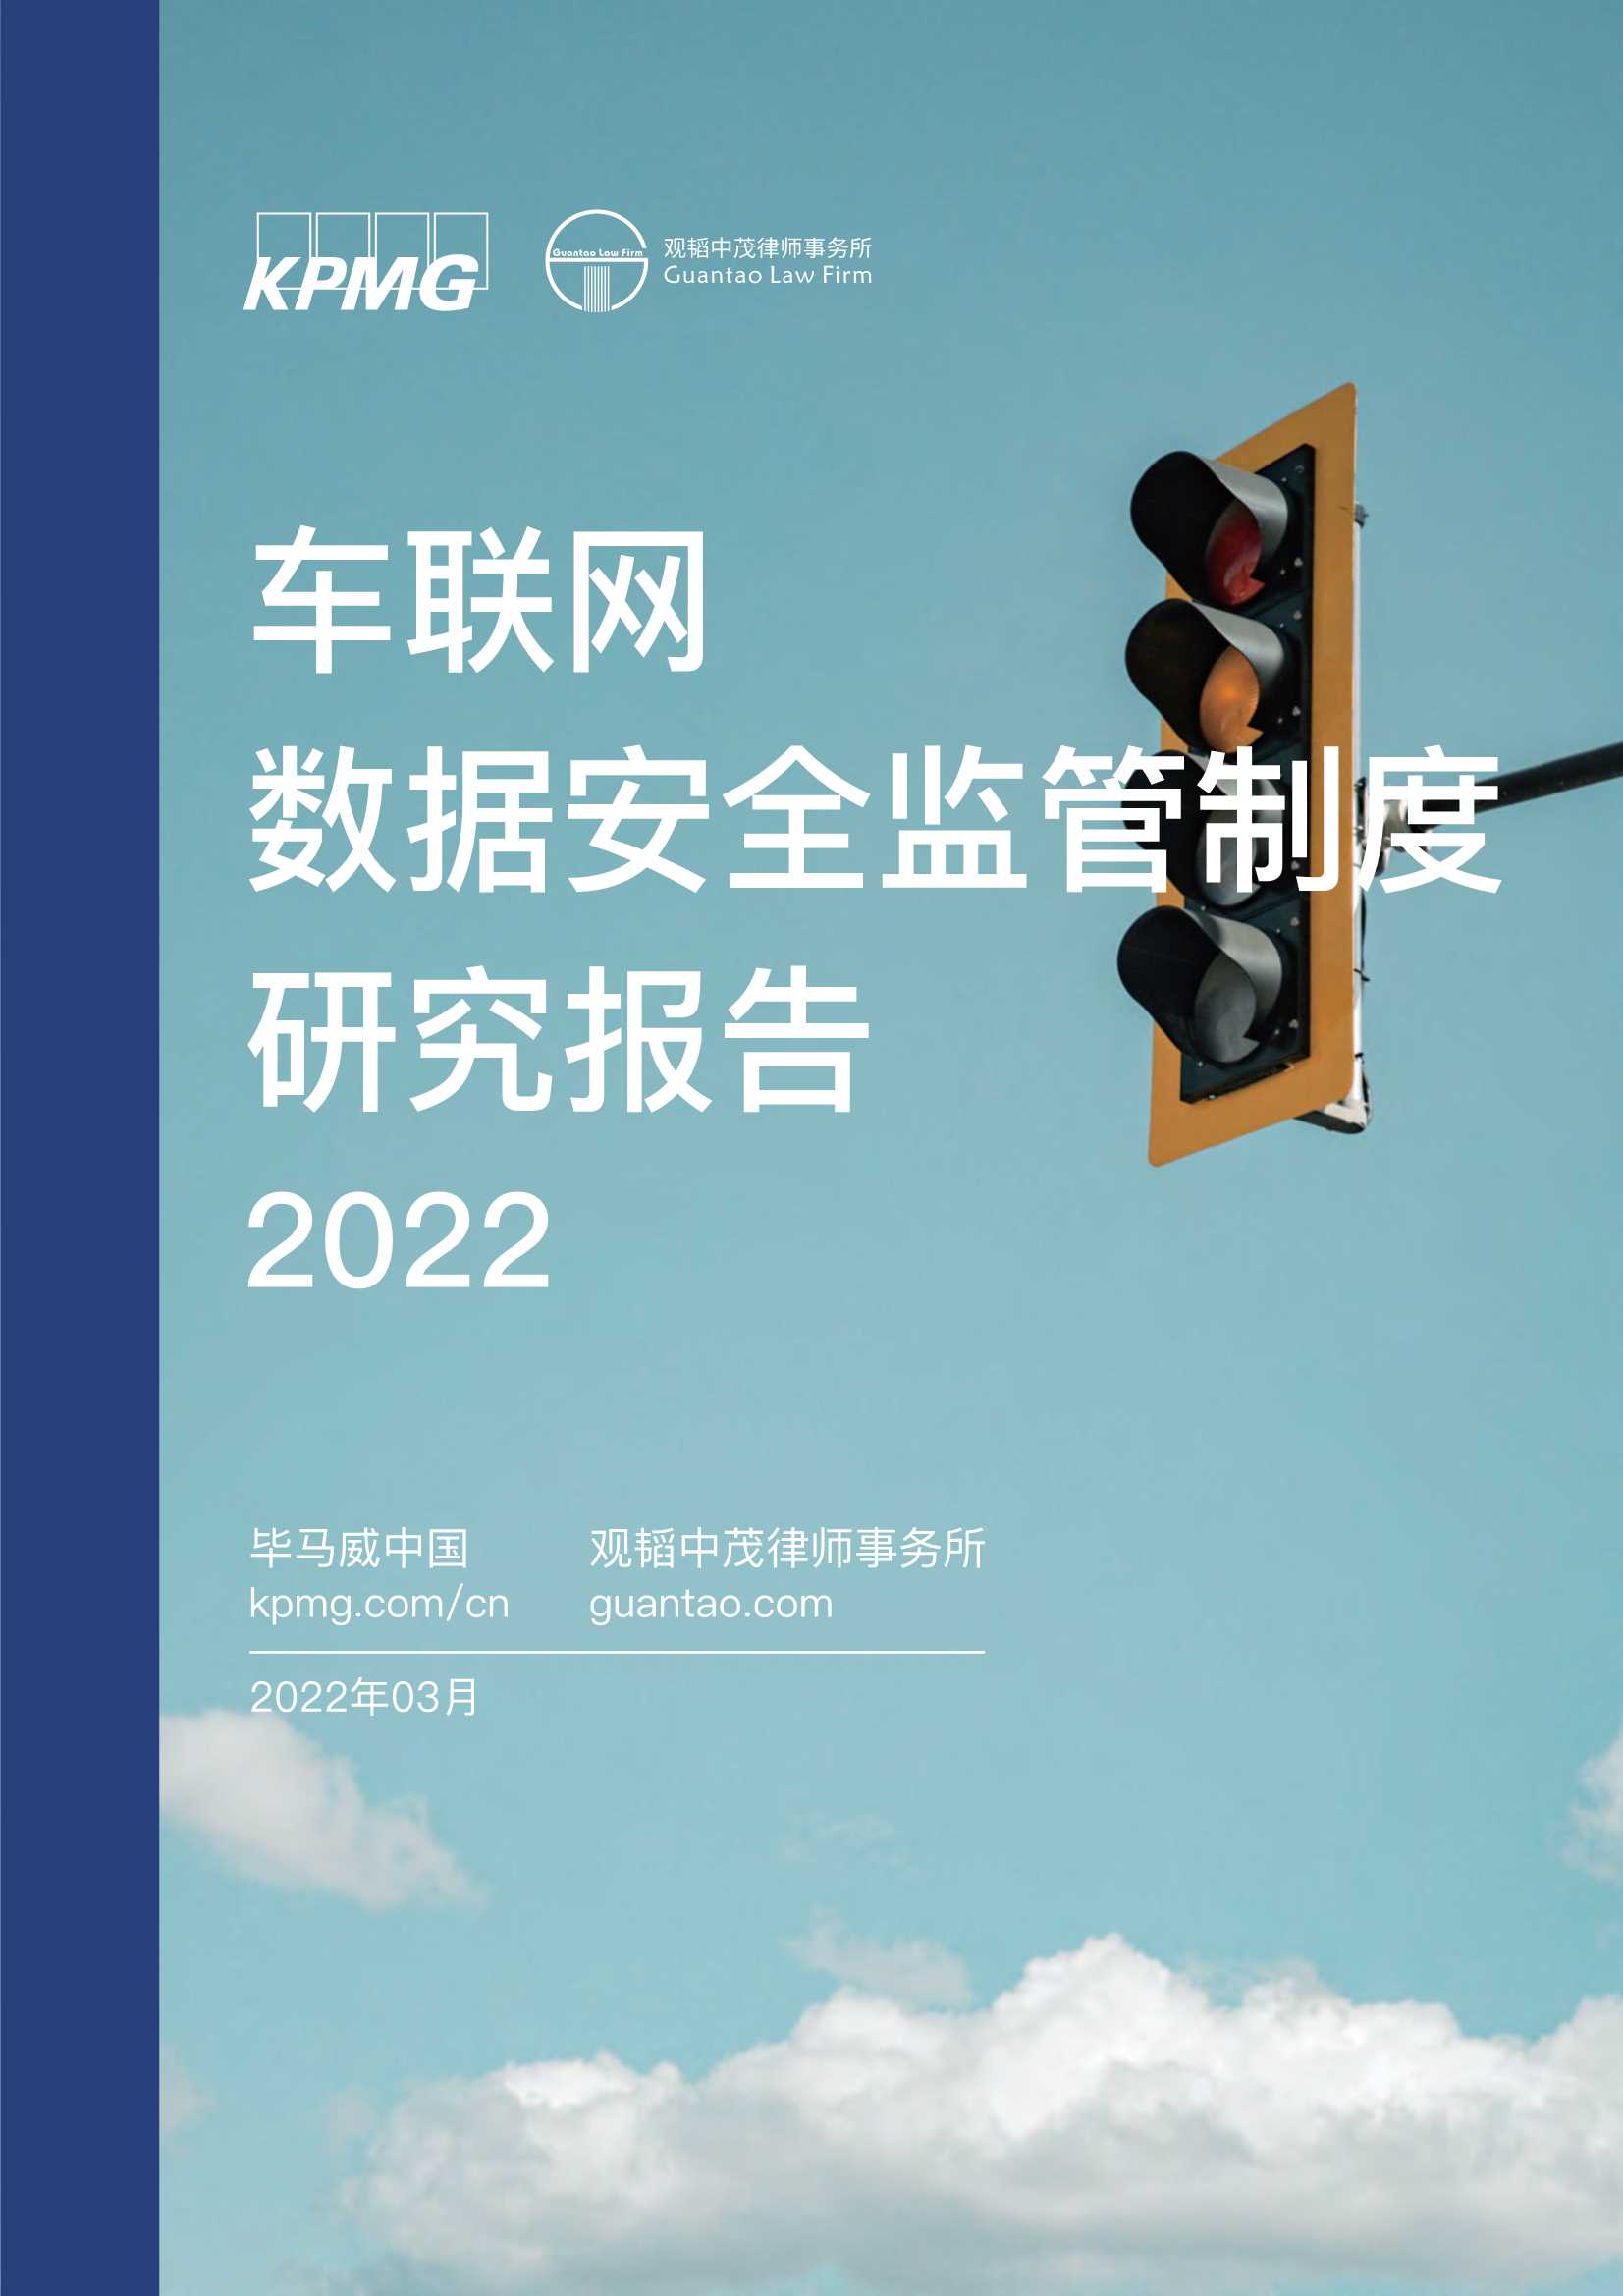 毕马威-2022车联网数据安全监管制度研究报告-2022.03-22页